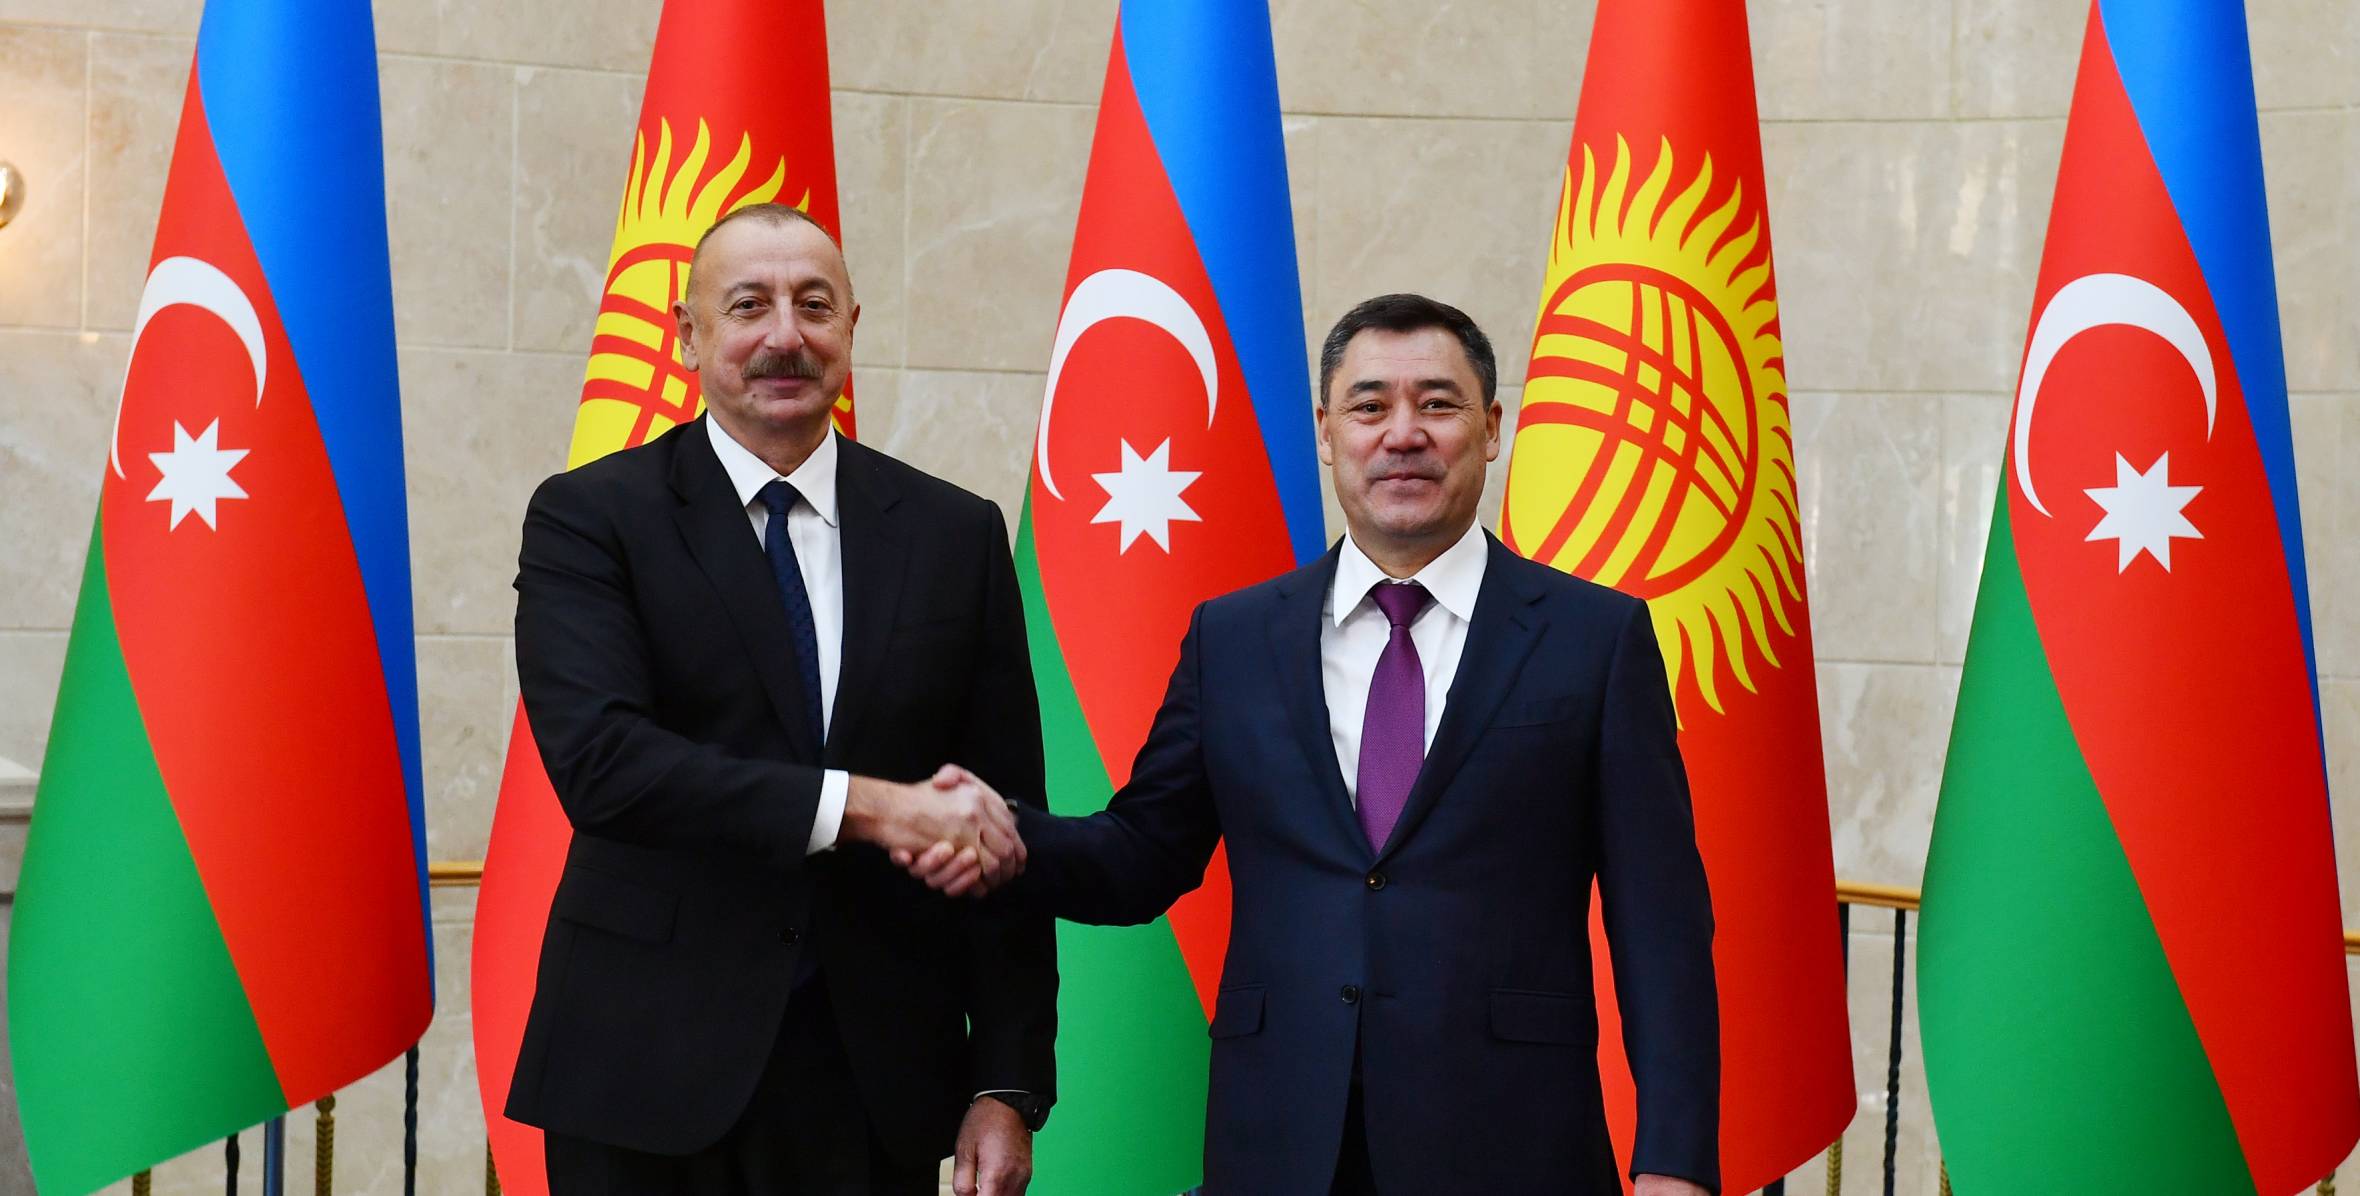 В Бишкеке состоялась церемония официальной встречи Ильхама Алиева